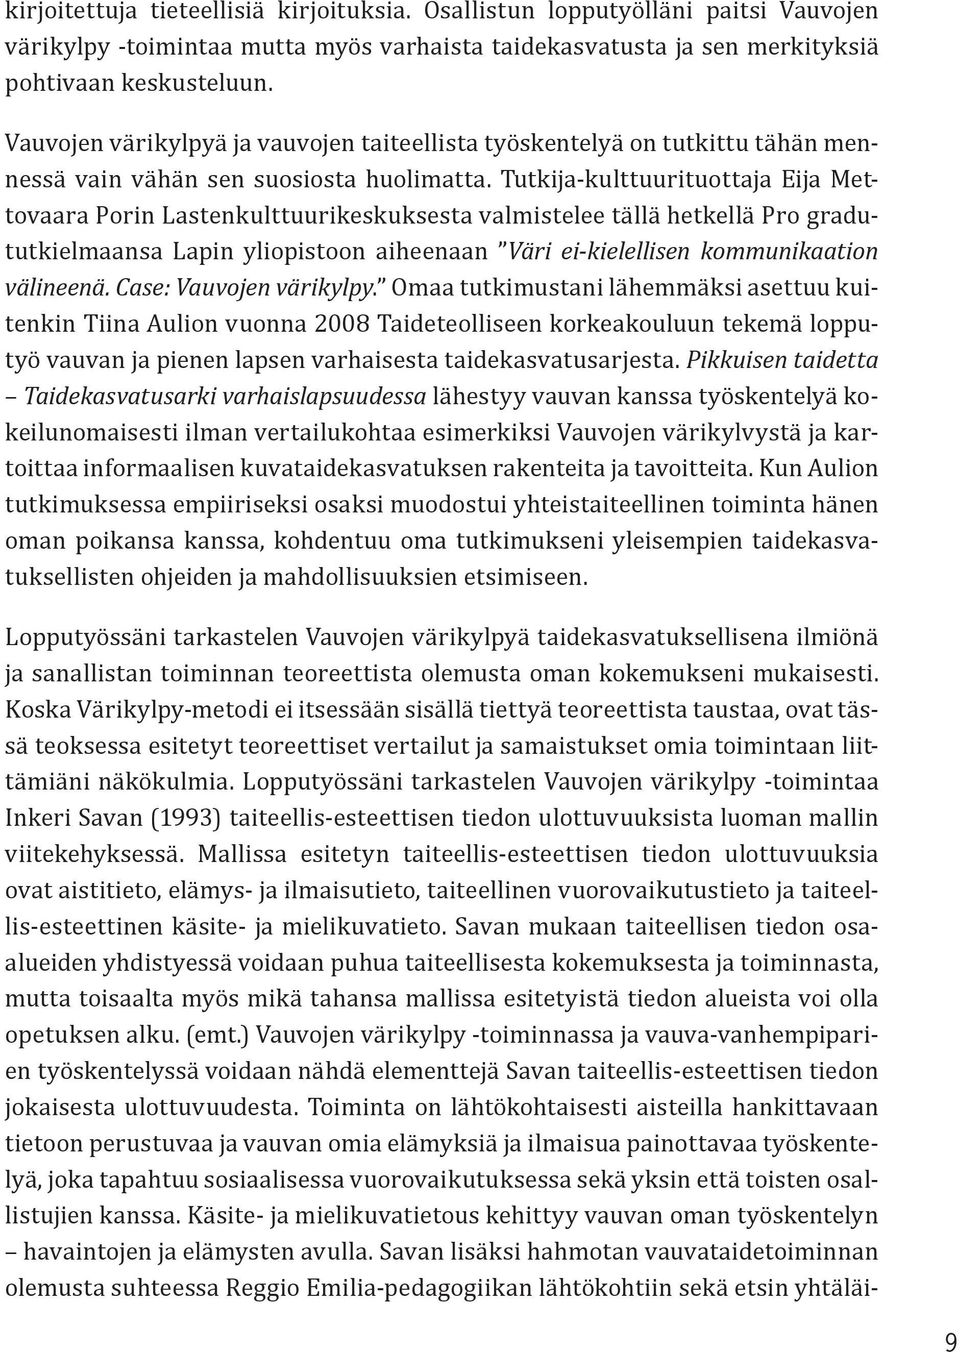 Tutkija-kulttuurituottaja Eija Mettovaara Porin Lastenkulttuurikeskuksesta valmistelee tällä hetkellä Pro gradututkielmaansa Lapin yliopistoon aiheenaan Väri ei-kielellisen kommunikaation välineenä.